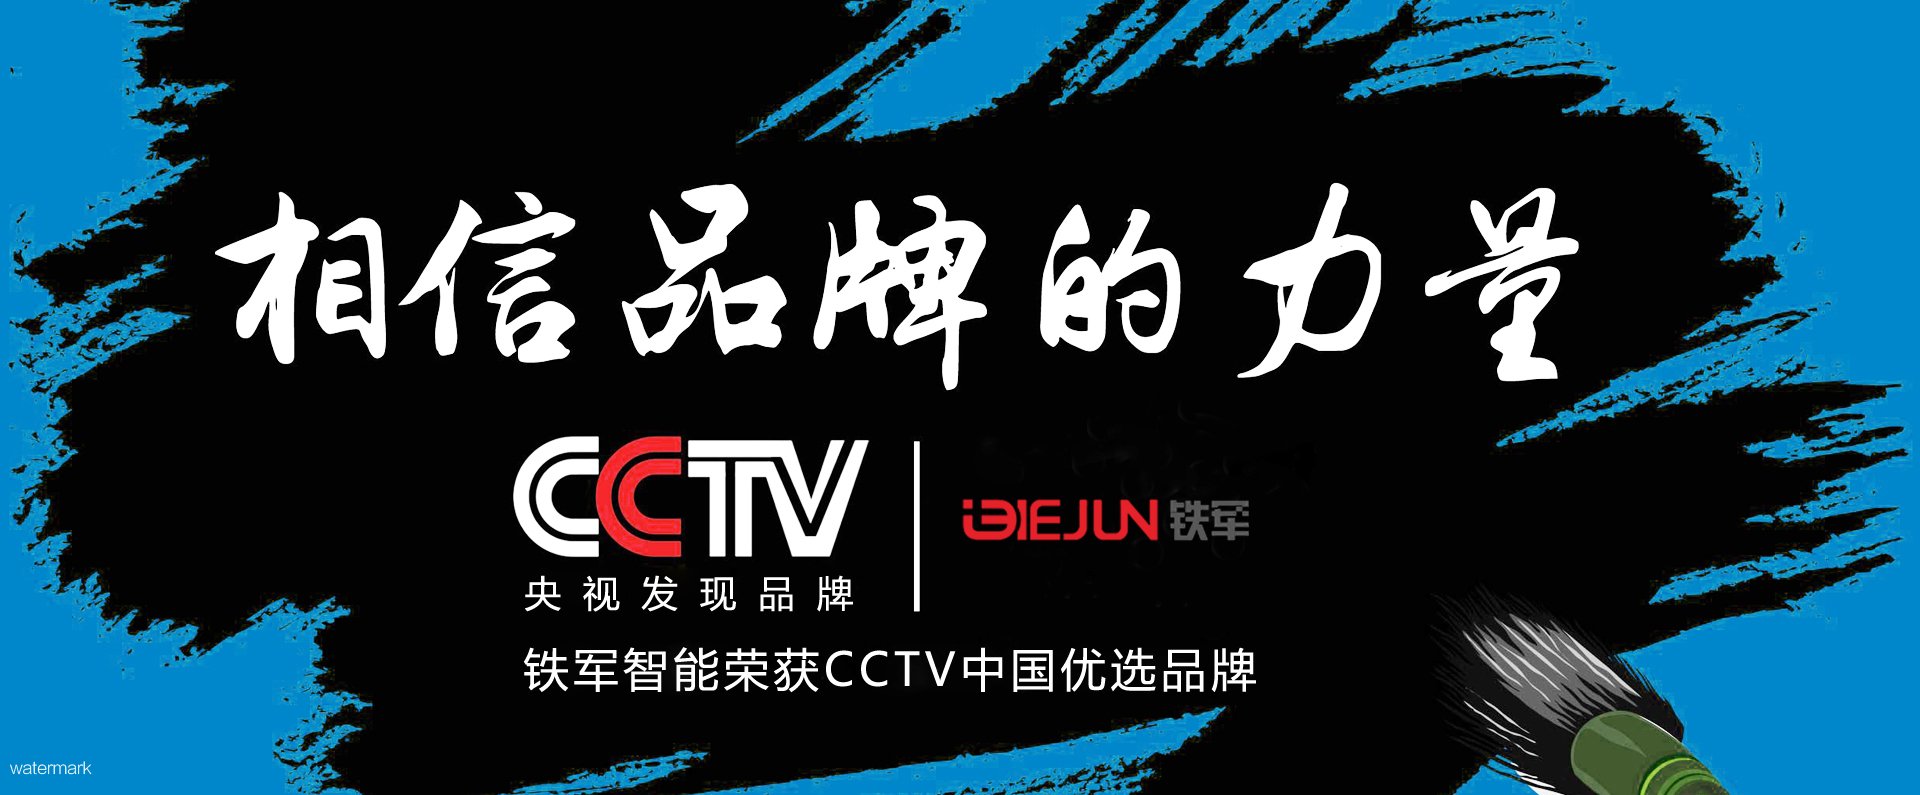  铁军智能亮相央视,入选CCTV中国优选品牌